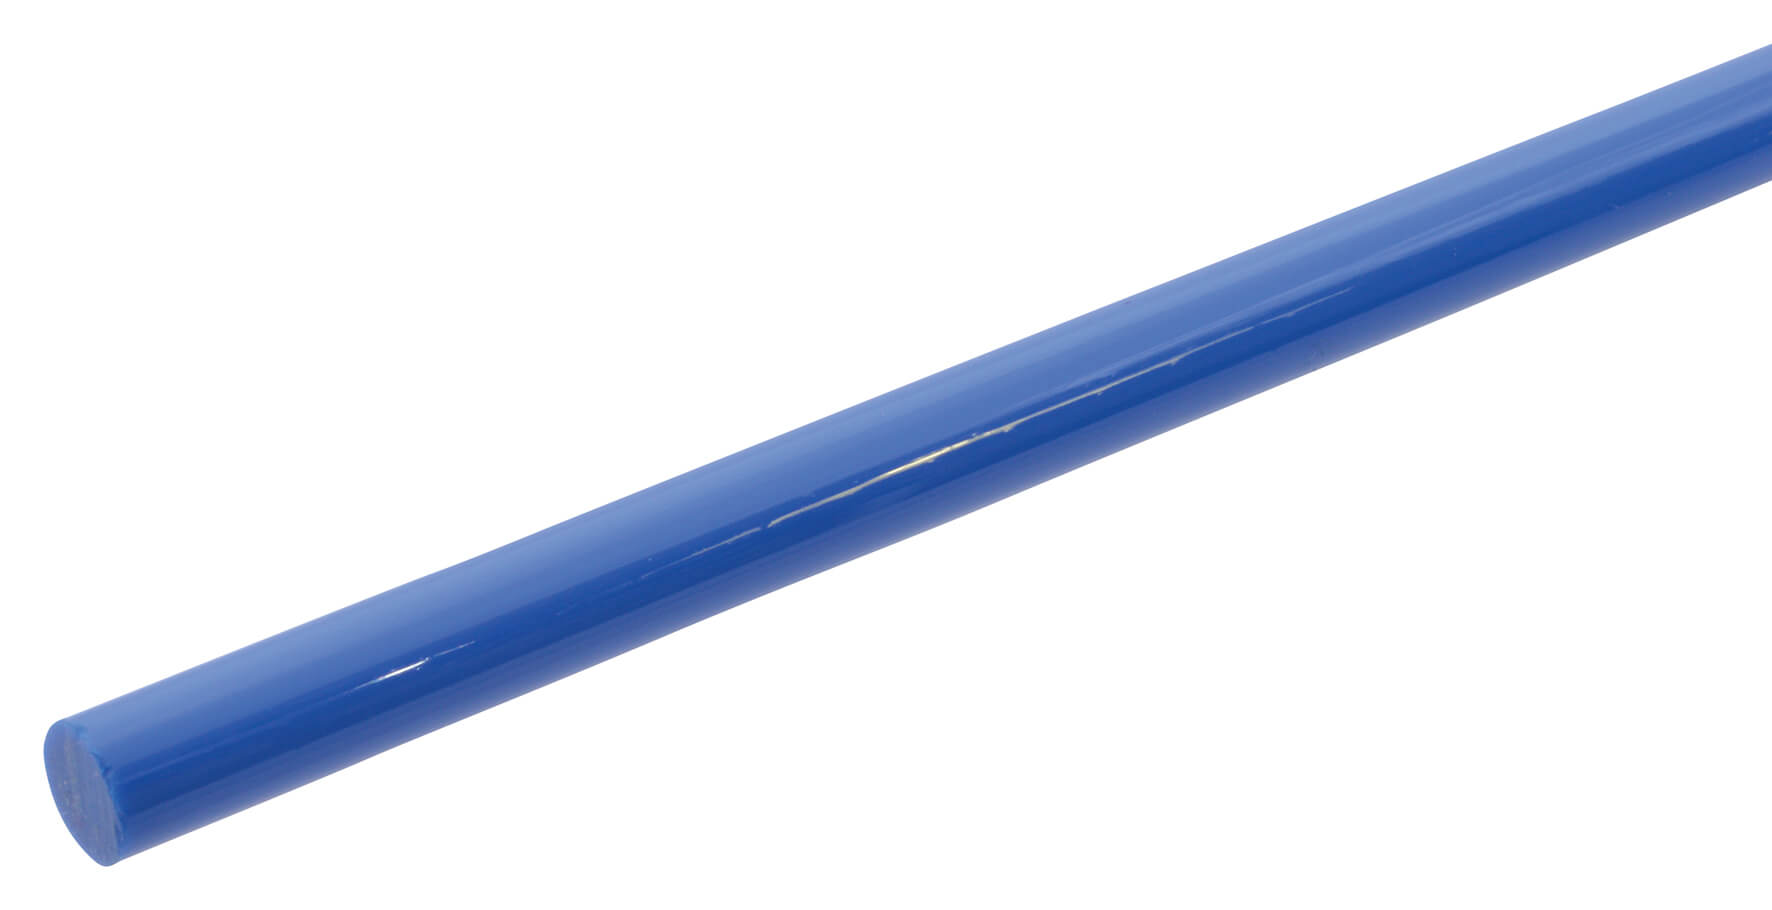 Acrylic Rod 4.8mm x 610mm - Solid Blue